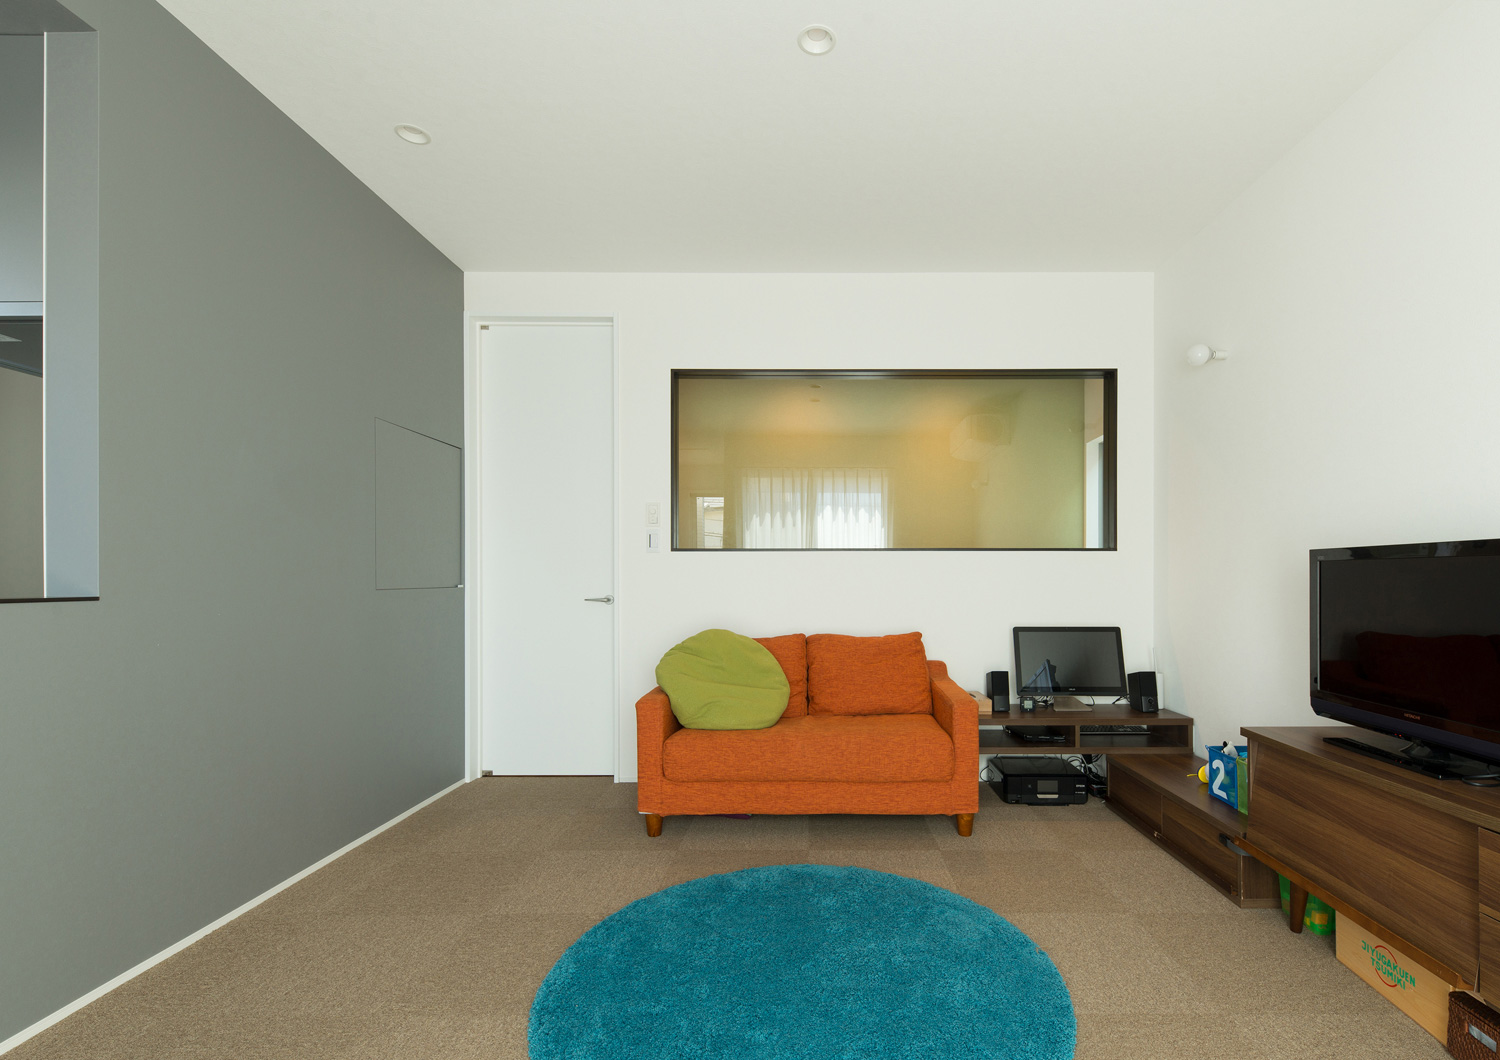 オレンジのソファーや青いラグがあるポップで可愛いLDK・デザイン住宅